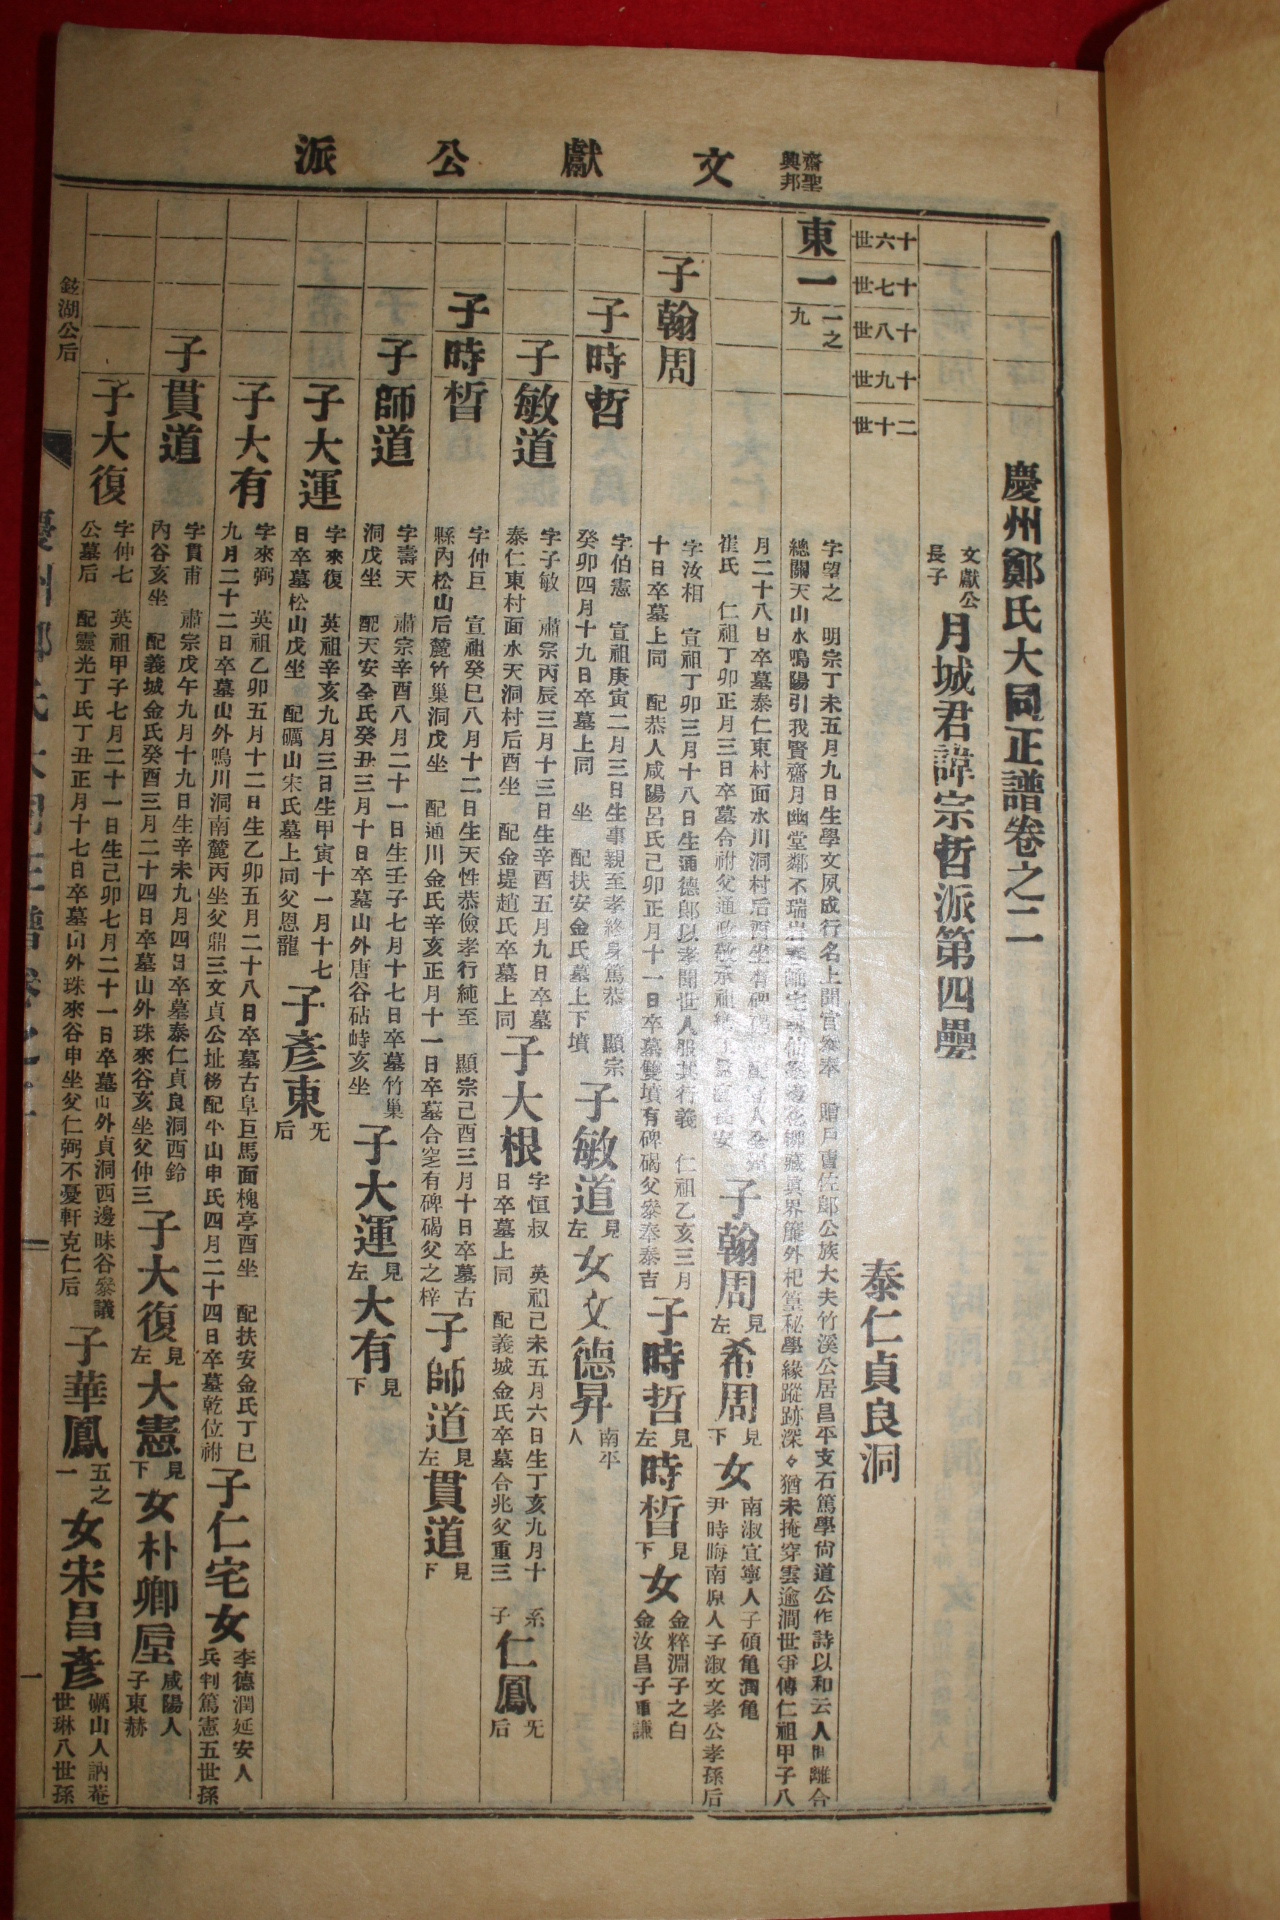 1958년 석판본 경주정씨대동정보(慶州鄭氏大同正譜)  11책